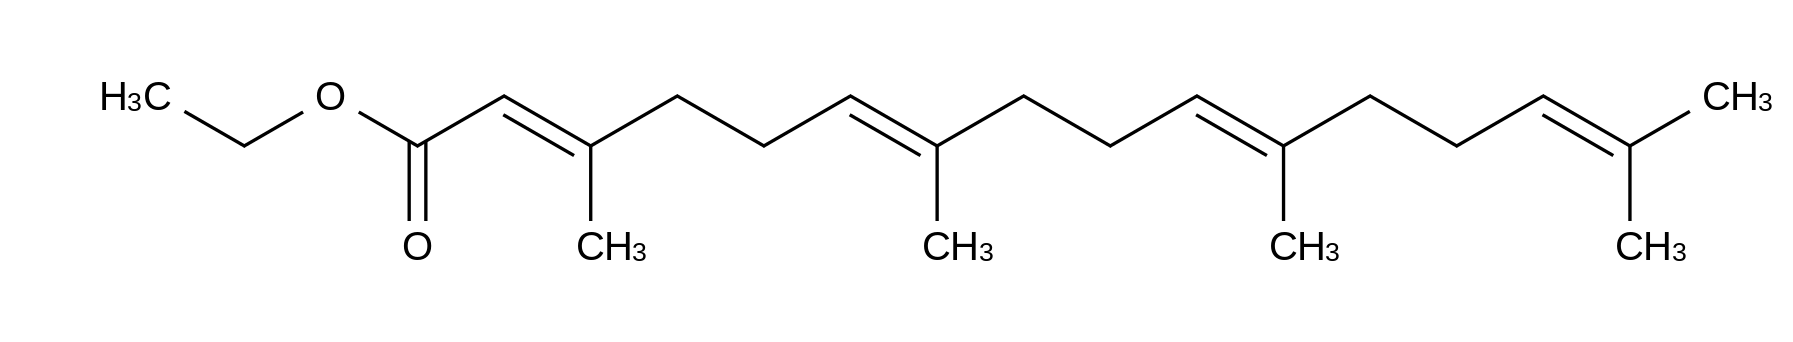 3,7,11,15-Tetramethylhexadeca-2,6,10,14-tetraenoic Acid Ethyl Ester (Mixture of Isomers)